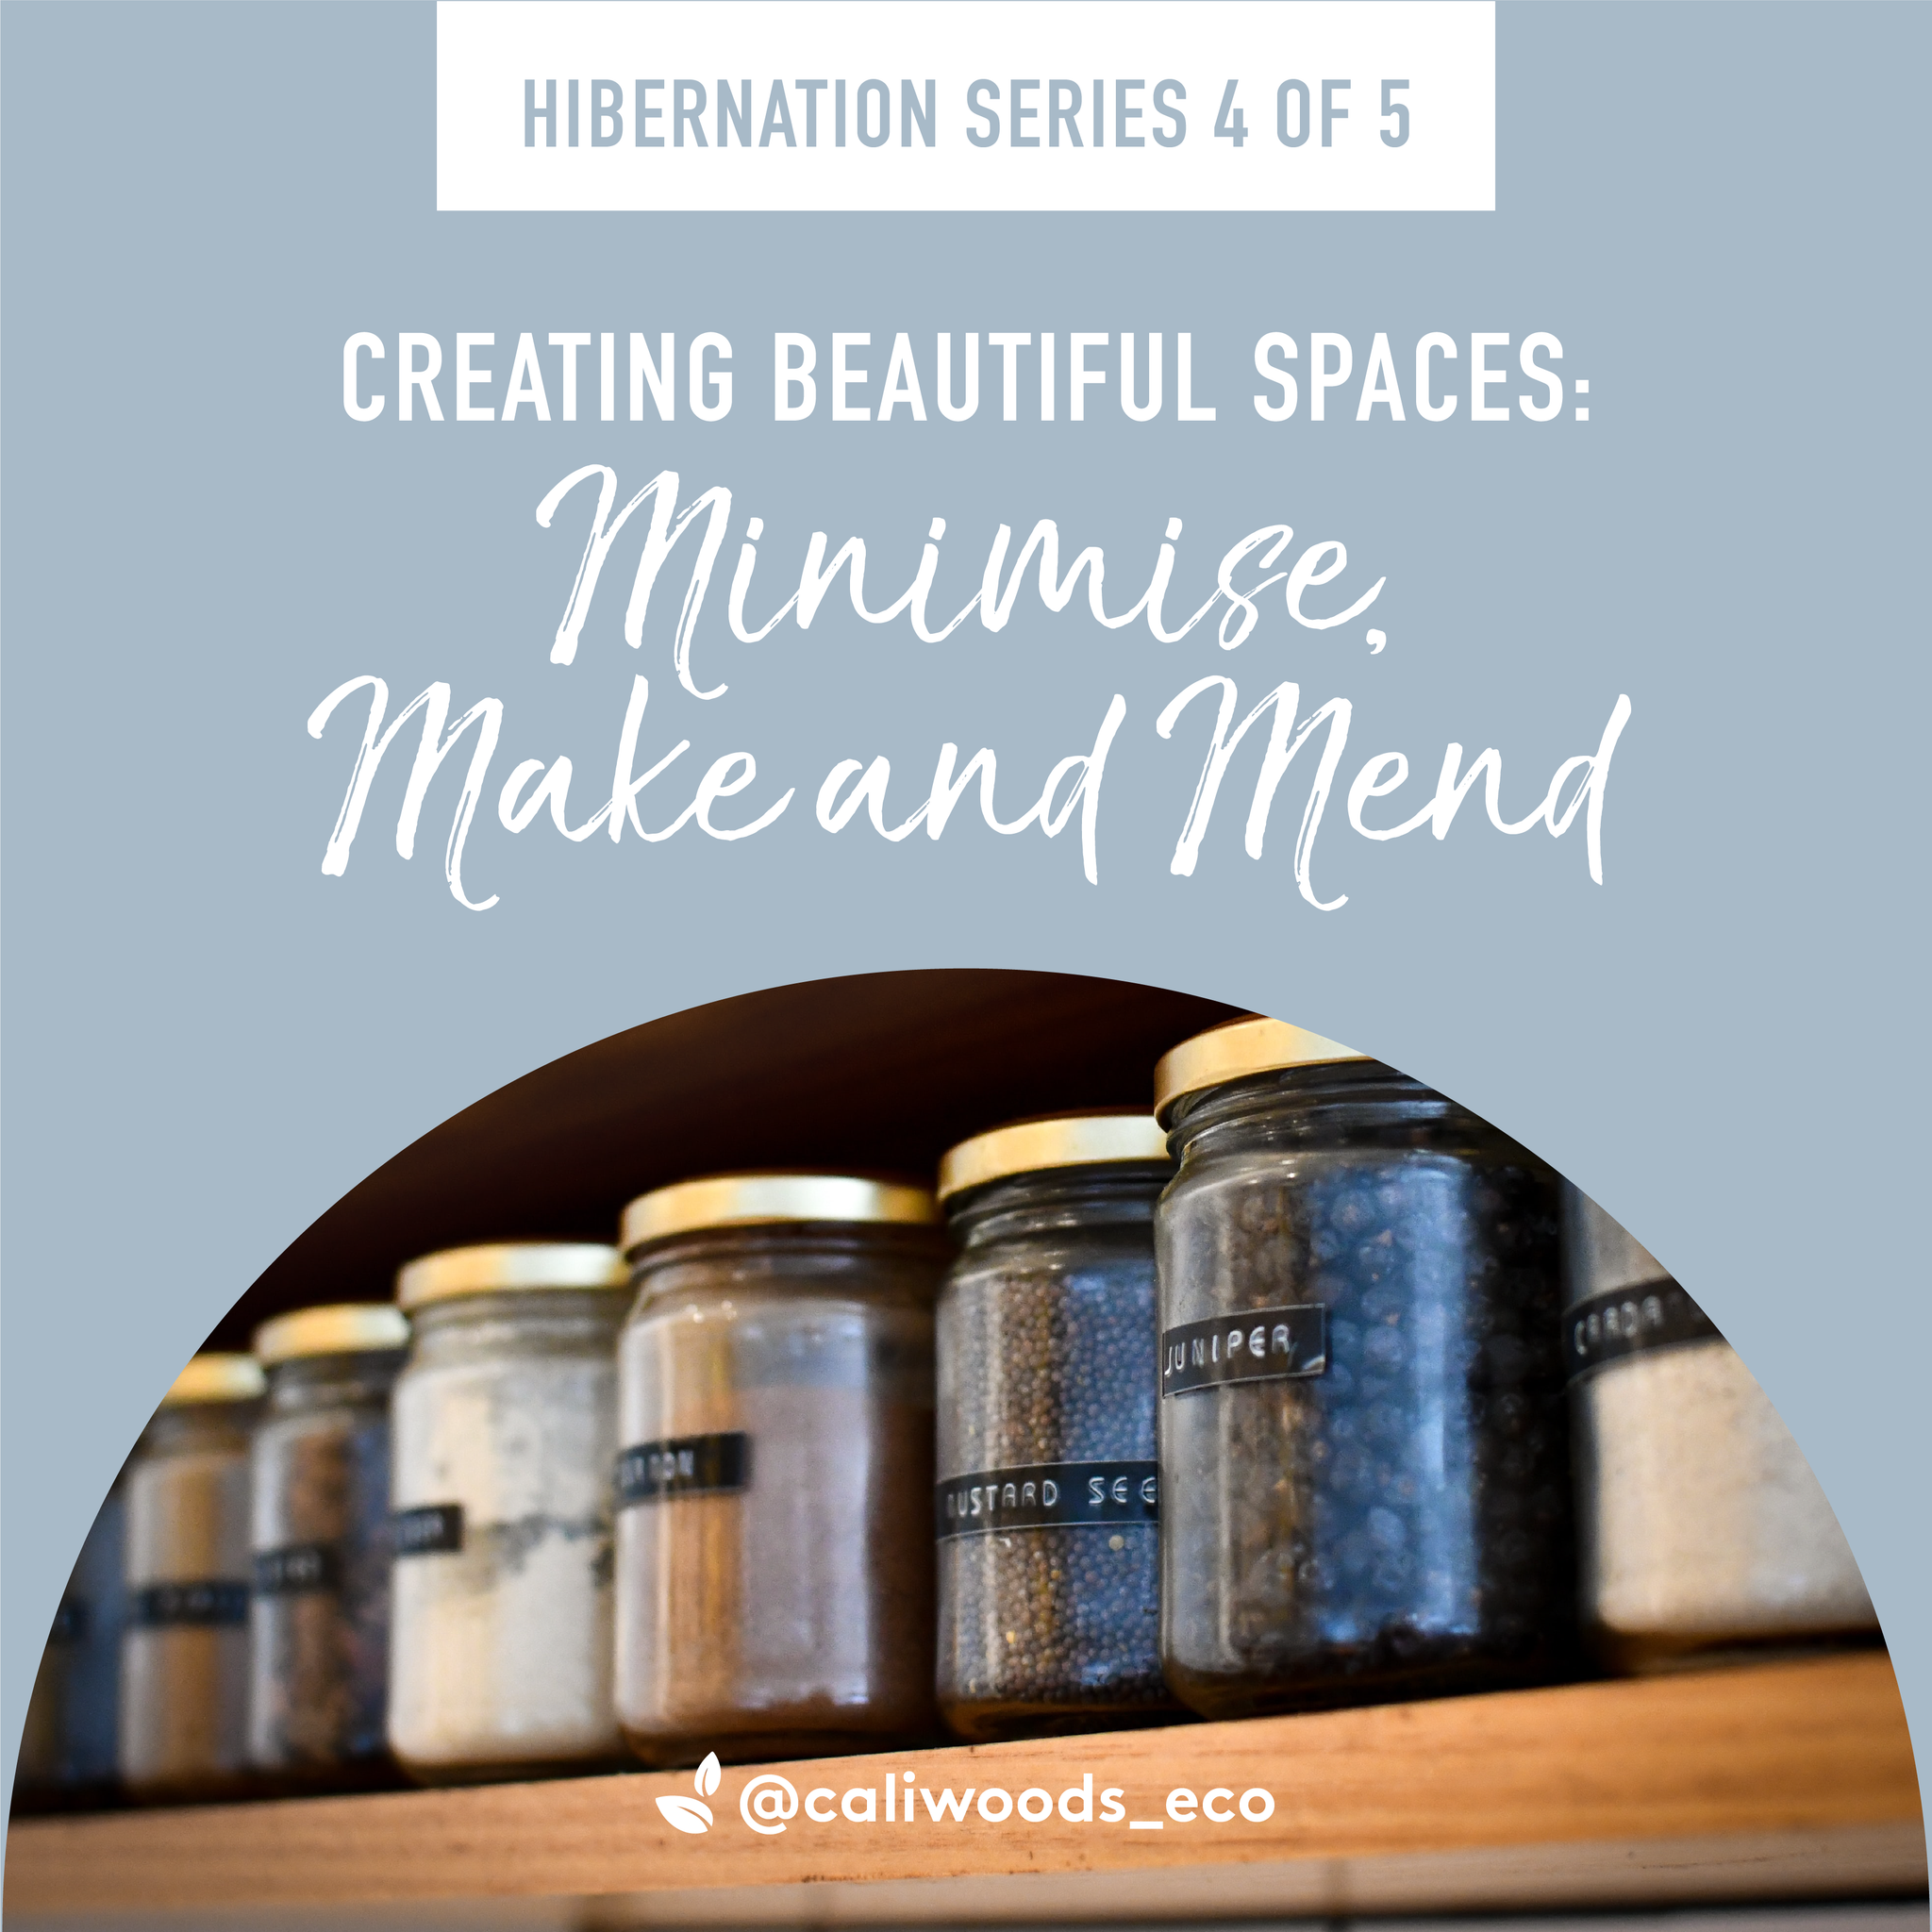 Hibernation Series 4 of 5: Minimise, Make and Mend